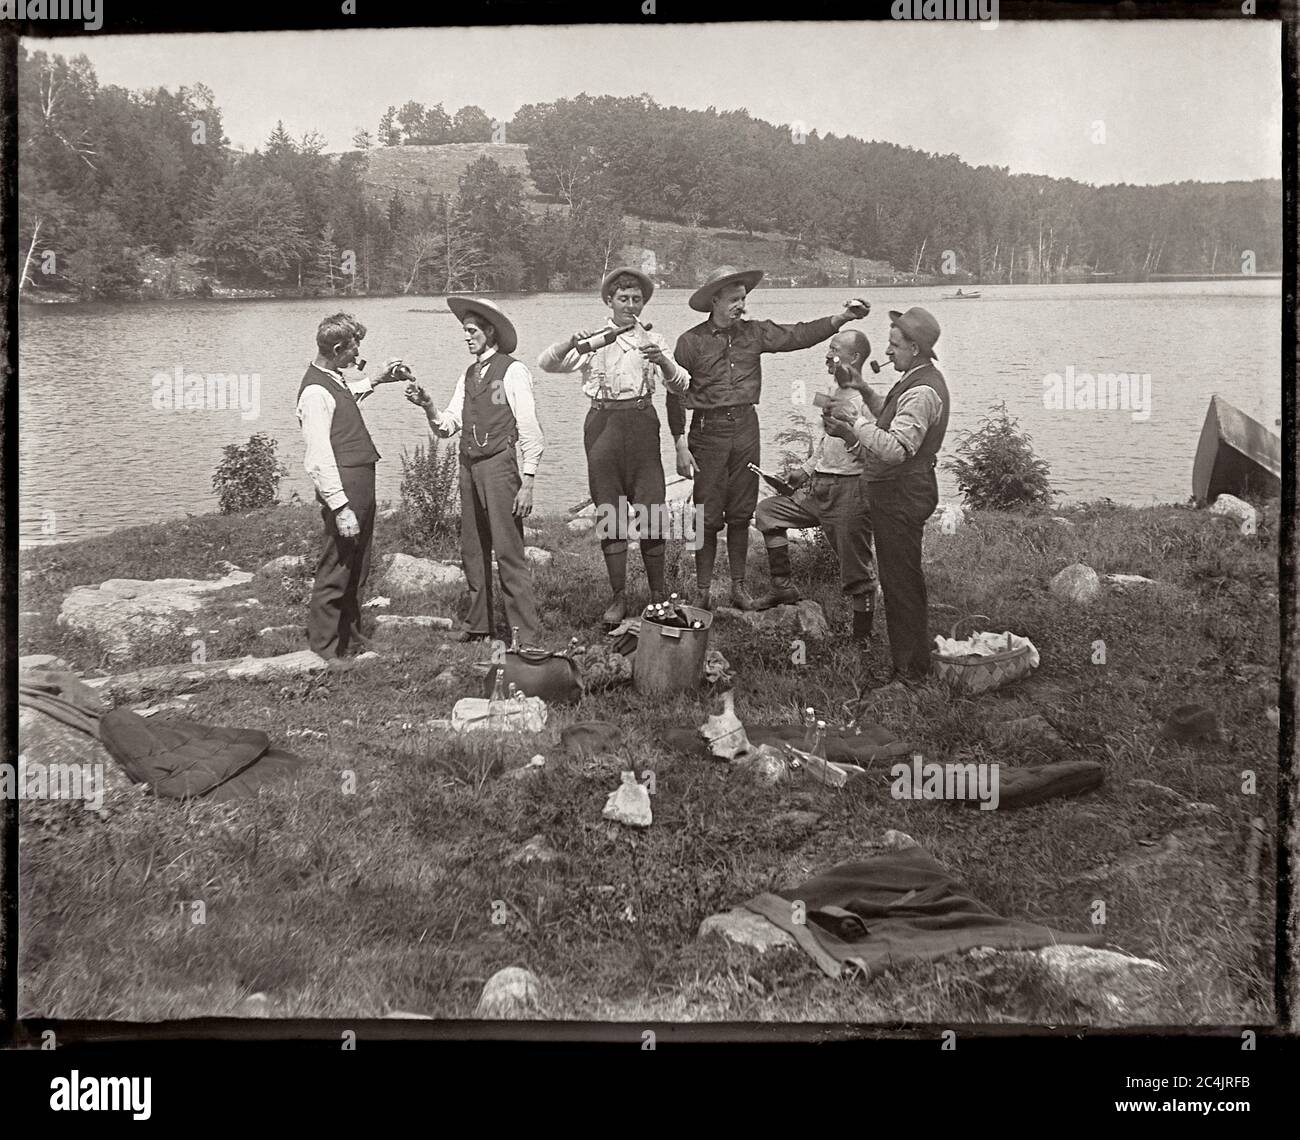 Sechs Männer, die ein Picknick am Seeufer trinken, um 1900. Bild von 4x5 Zoll Glasplatte negativ. Stockfoto